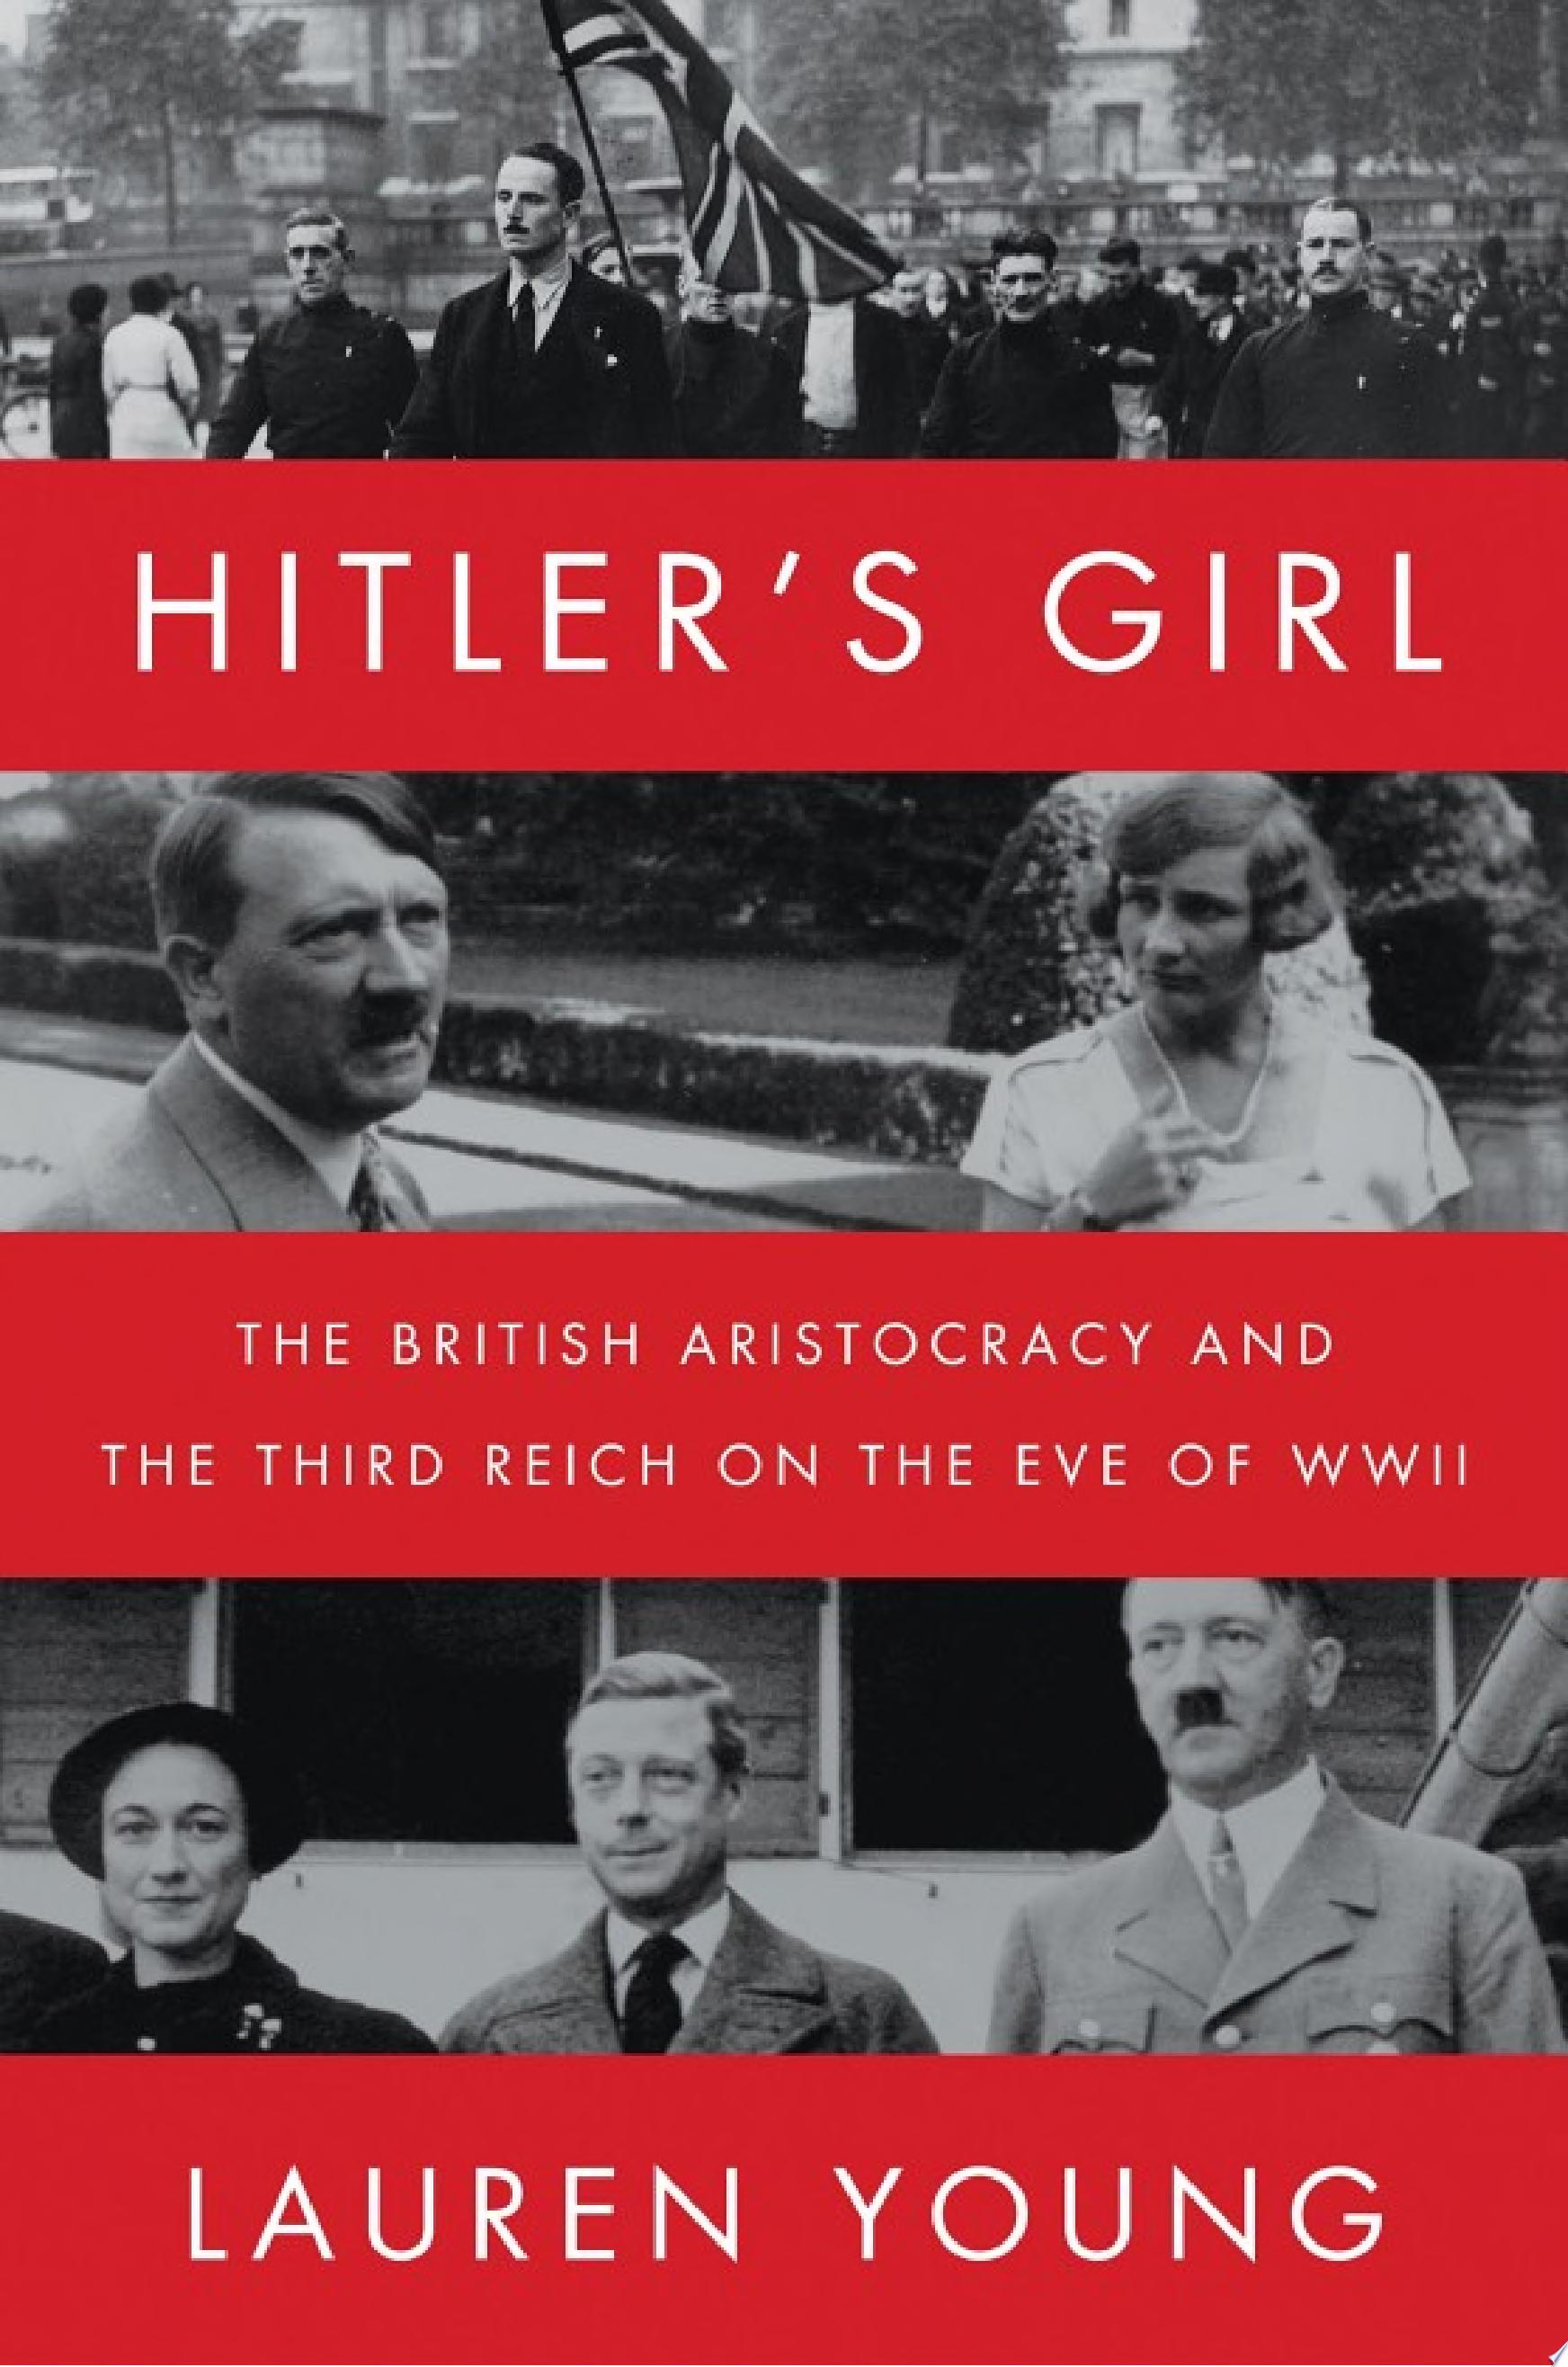 Image for "Hitler's Girl"